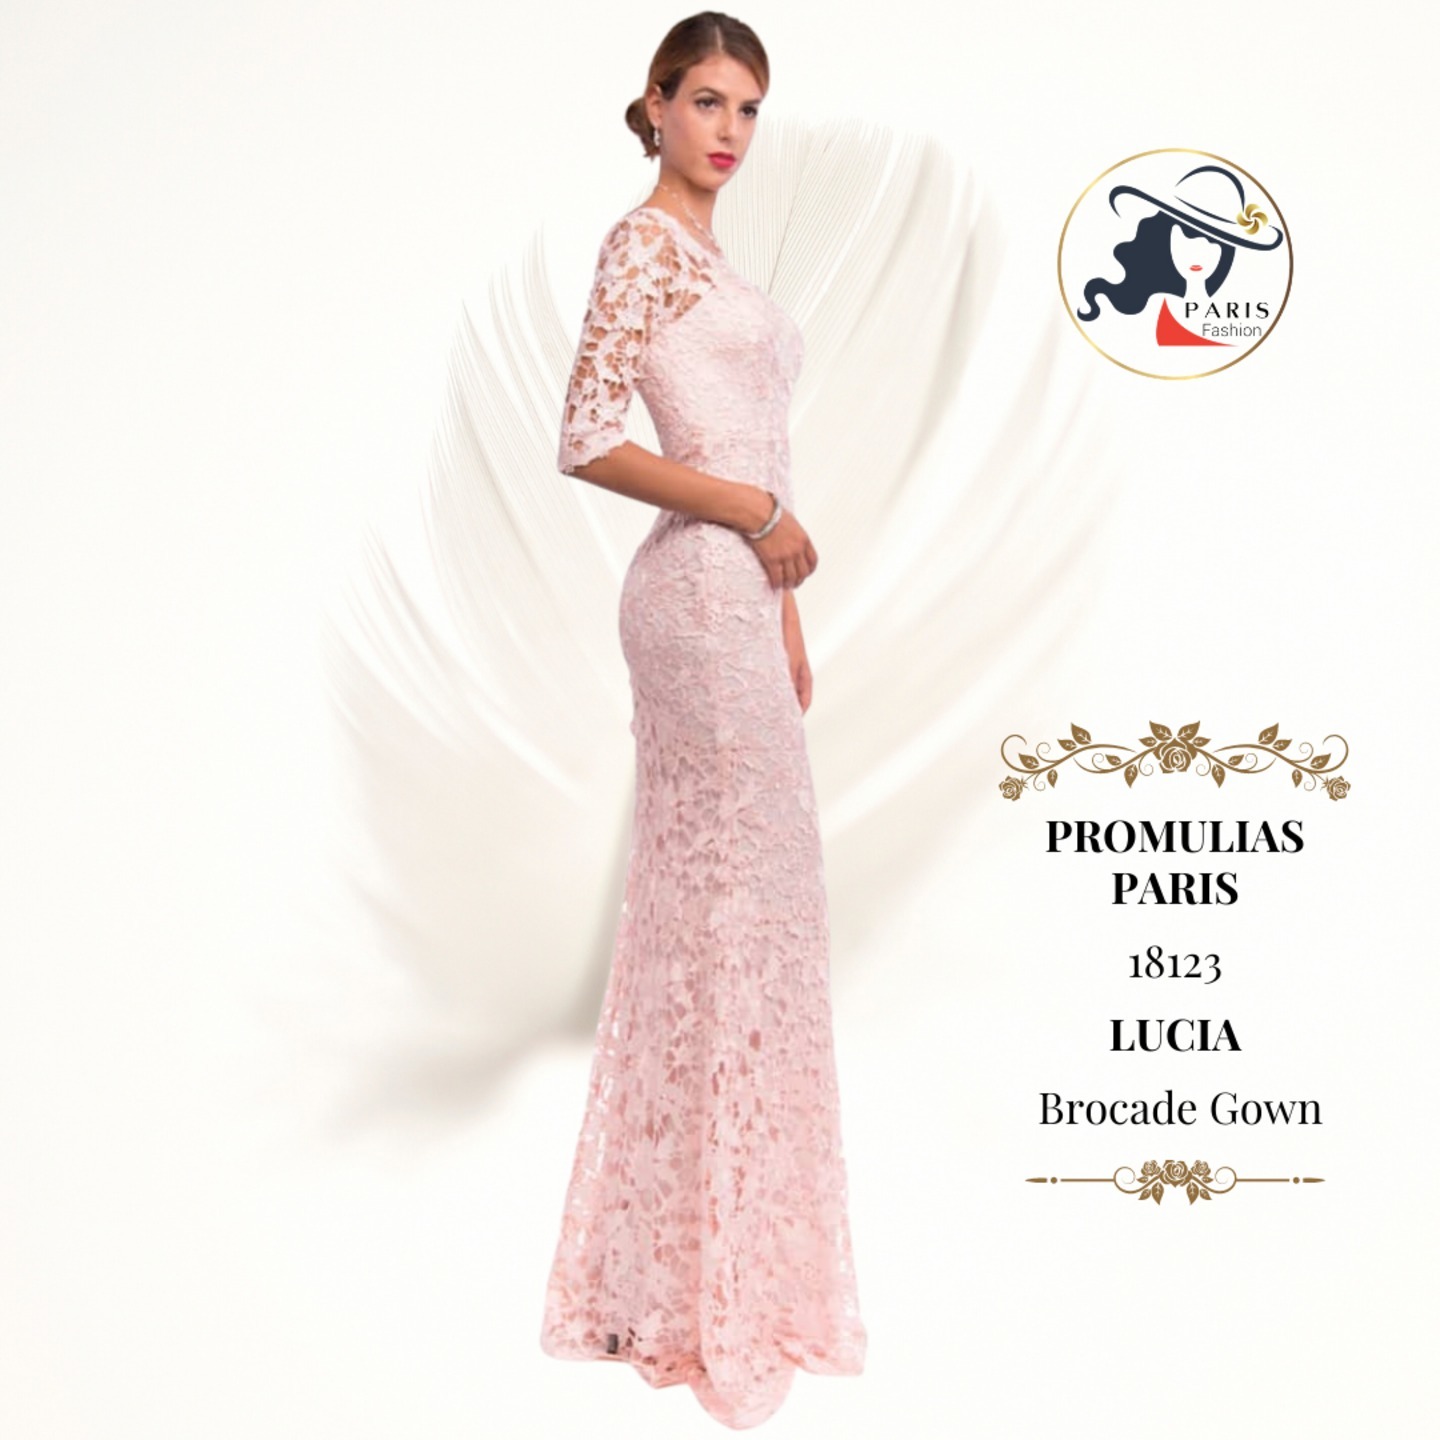 PROMULIAS PARIS  18123  LUCIA   Brocade Gown